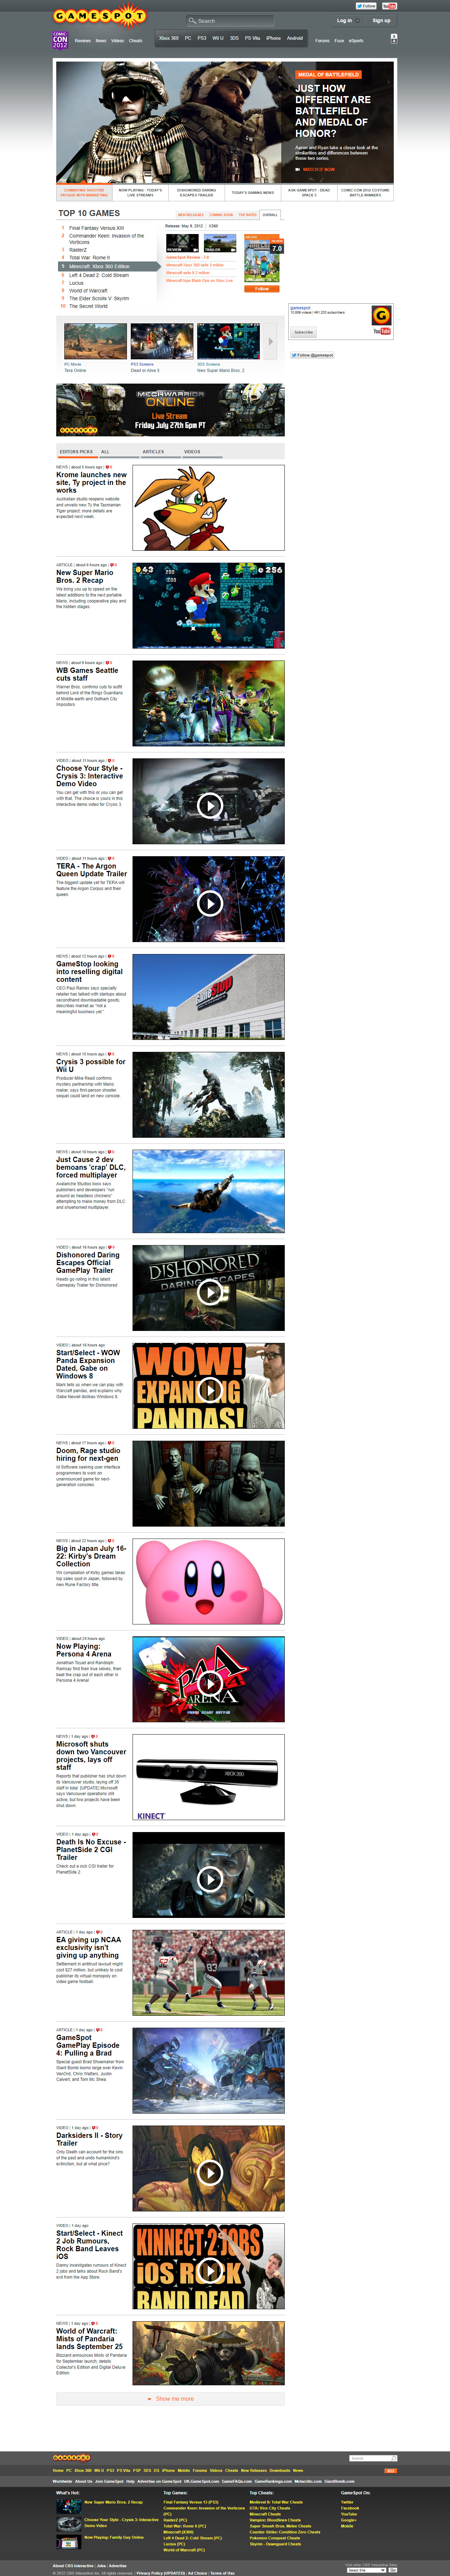 GameSpot website in 2012